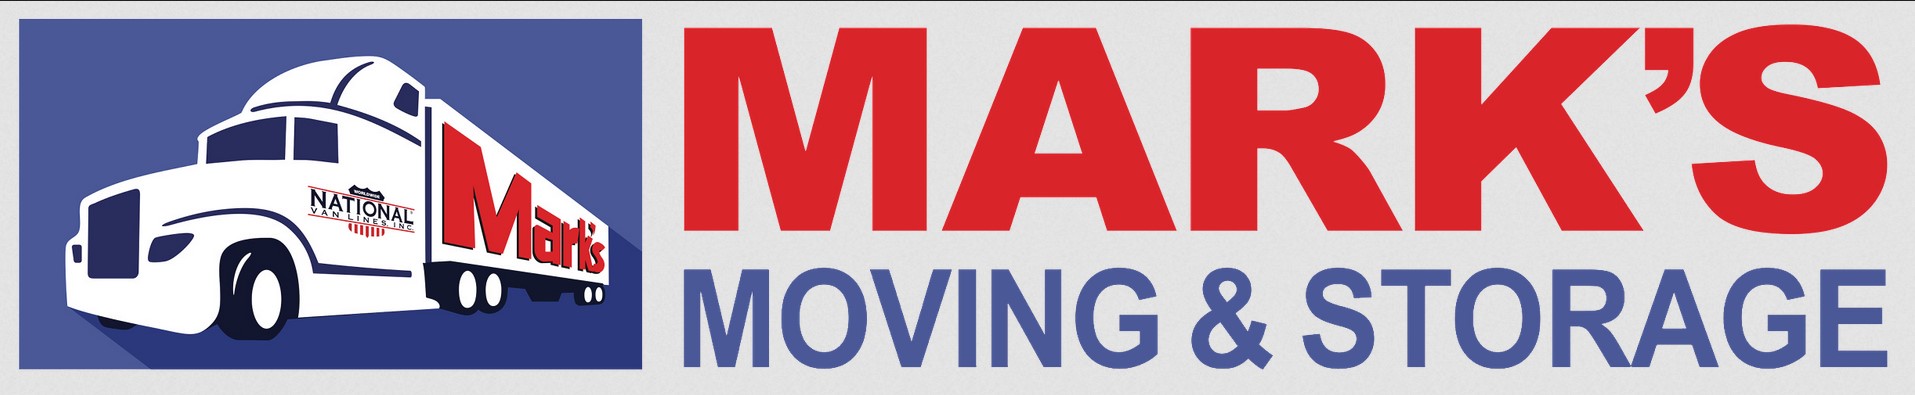 Marks Moving company logo